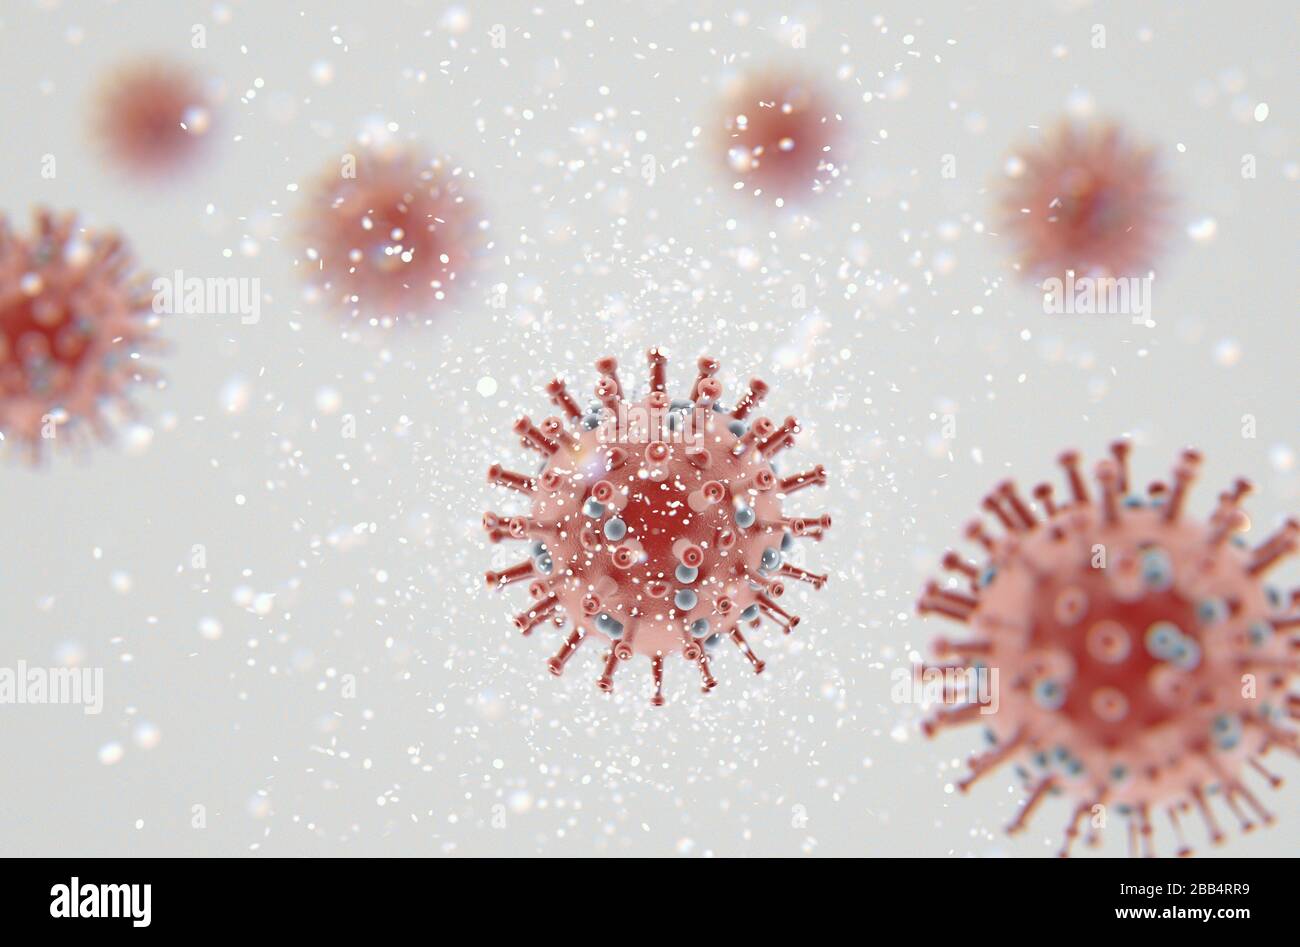 Vue rapprochée microscopique des particules de coronavirus rouge aéroporté - rendu tridimensionnel Banque D'Images